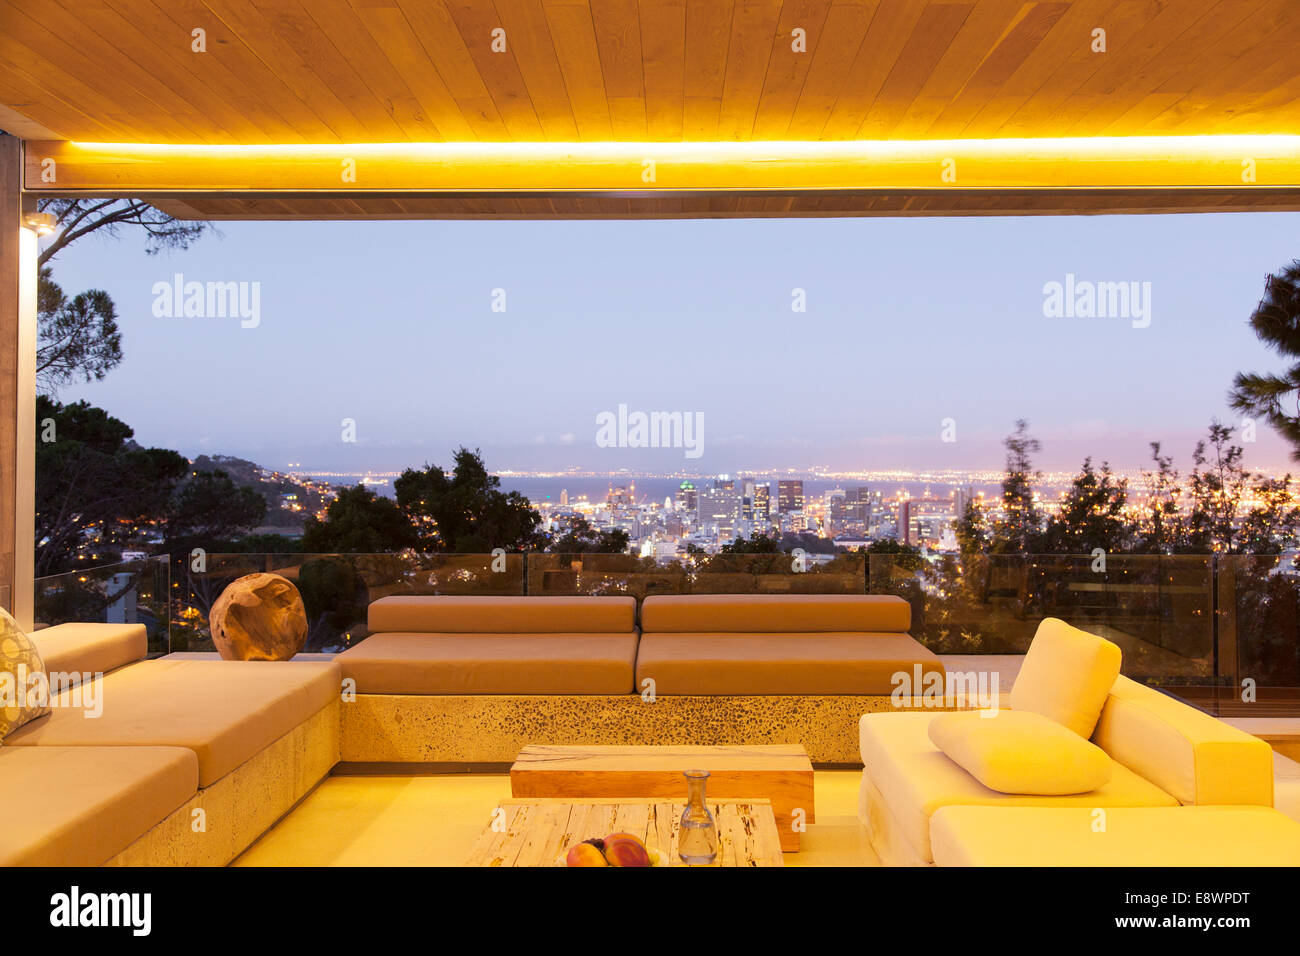 Modern living room overlooking illuminated cityscape at night Stock Photo